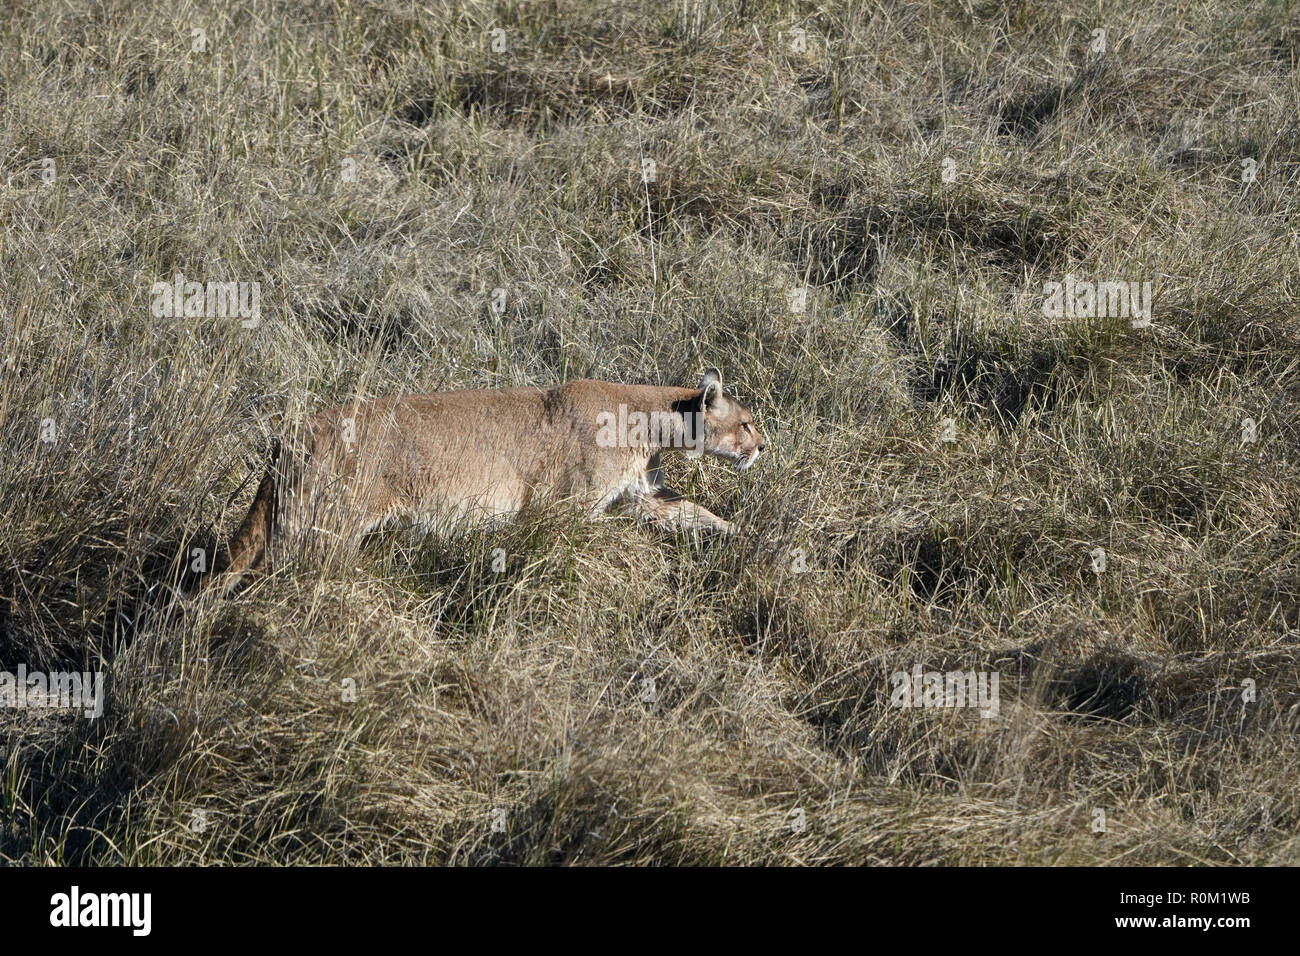 Schwangere Puma, Puma concolor Stockfotografie - Alamy